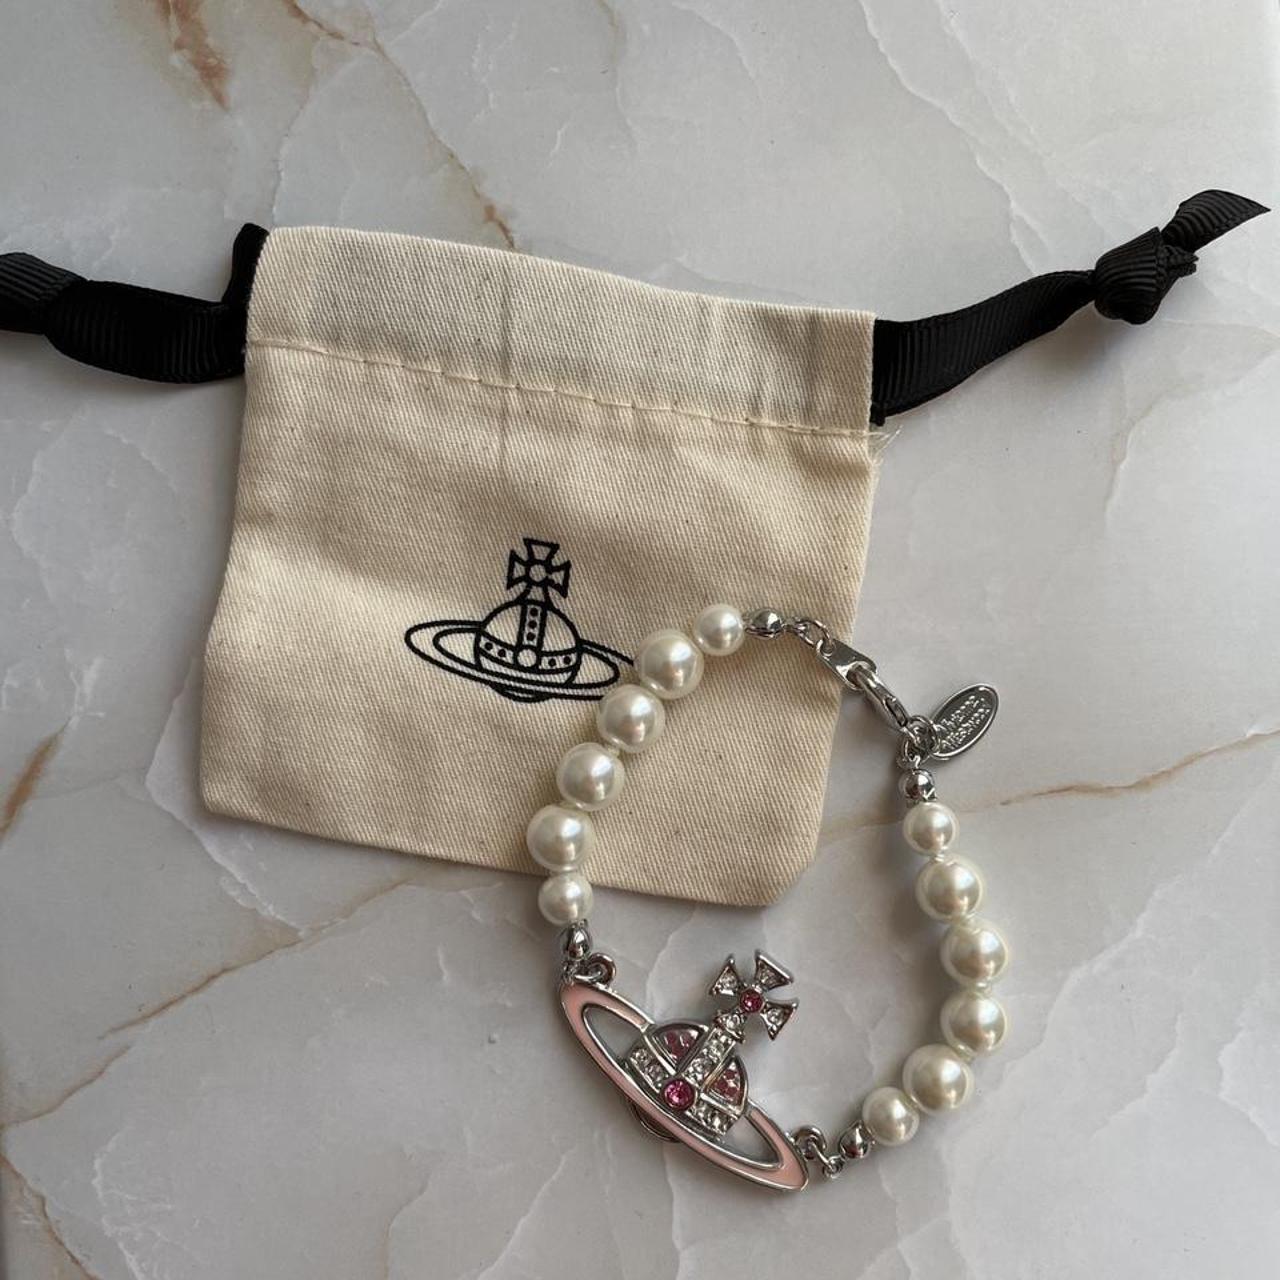 Vivienne Westwood Silver Bracelet with pearls ... - Depop